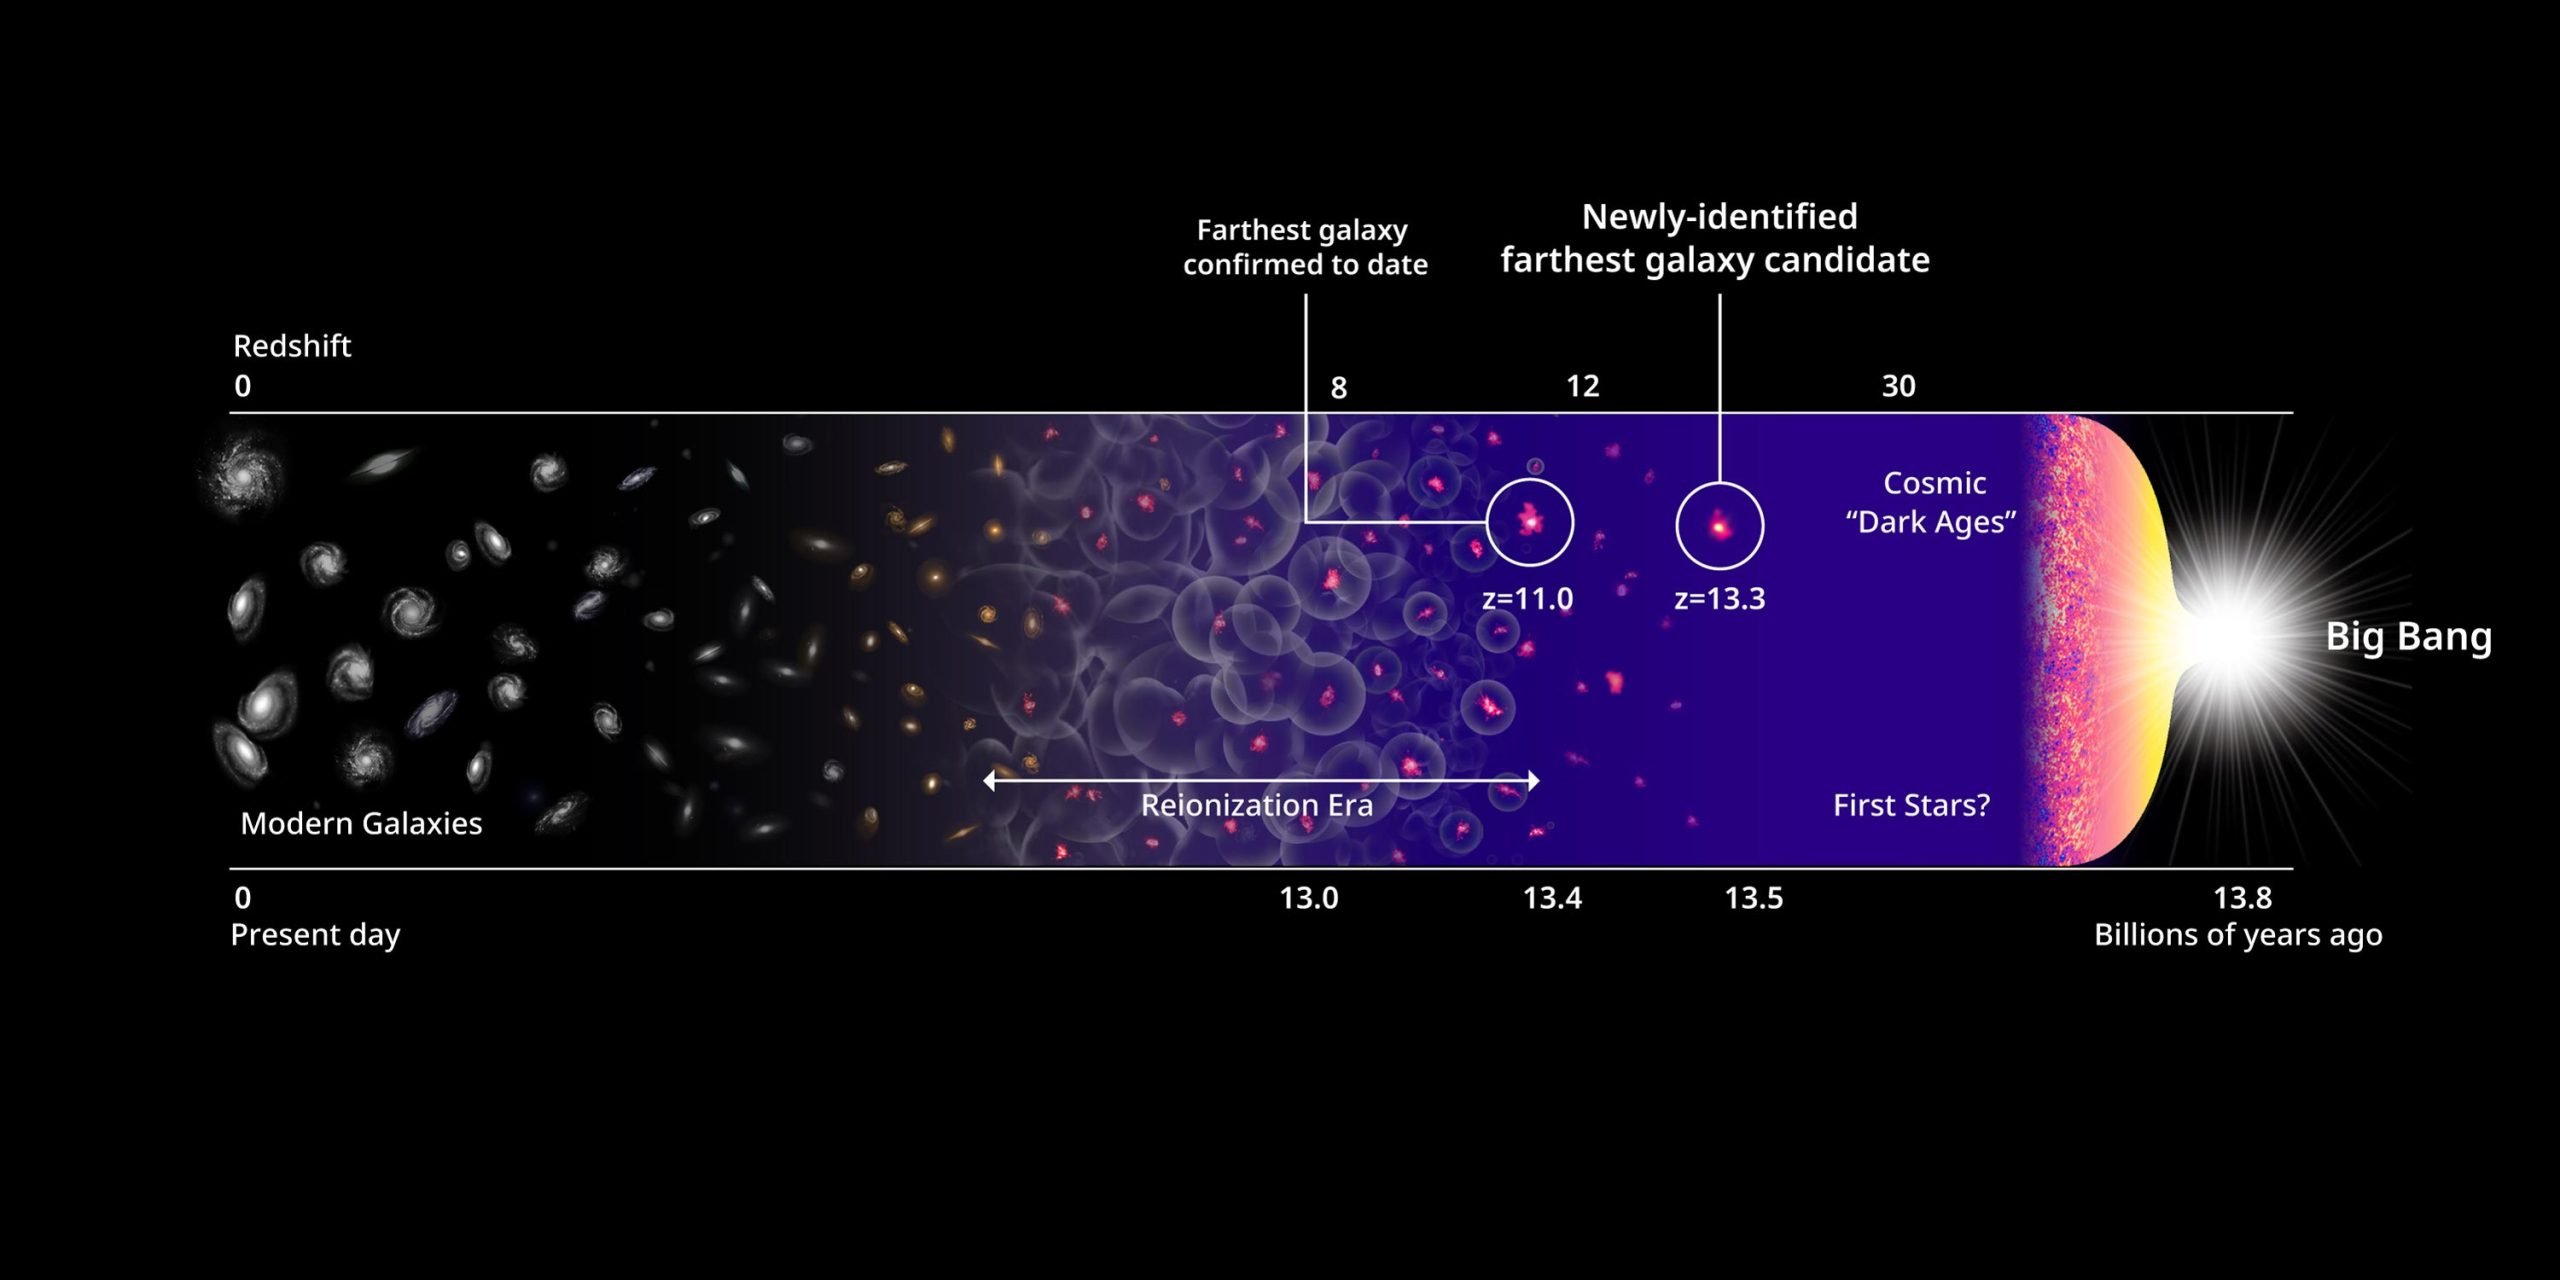 Zinātnieki ir atklājuši visu laiku attālāko galaktiku – tā var būt visuma vecāko zvaigžņu mājvieta